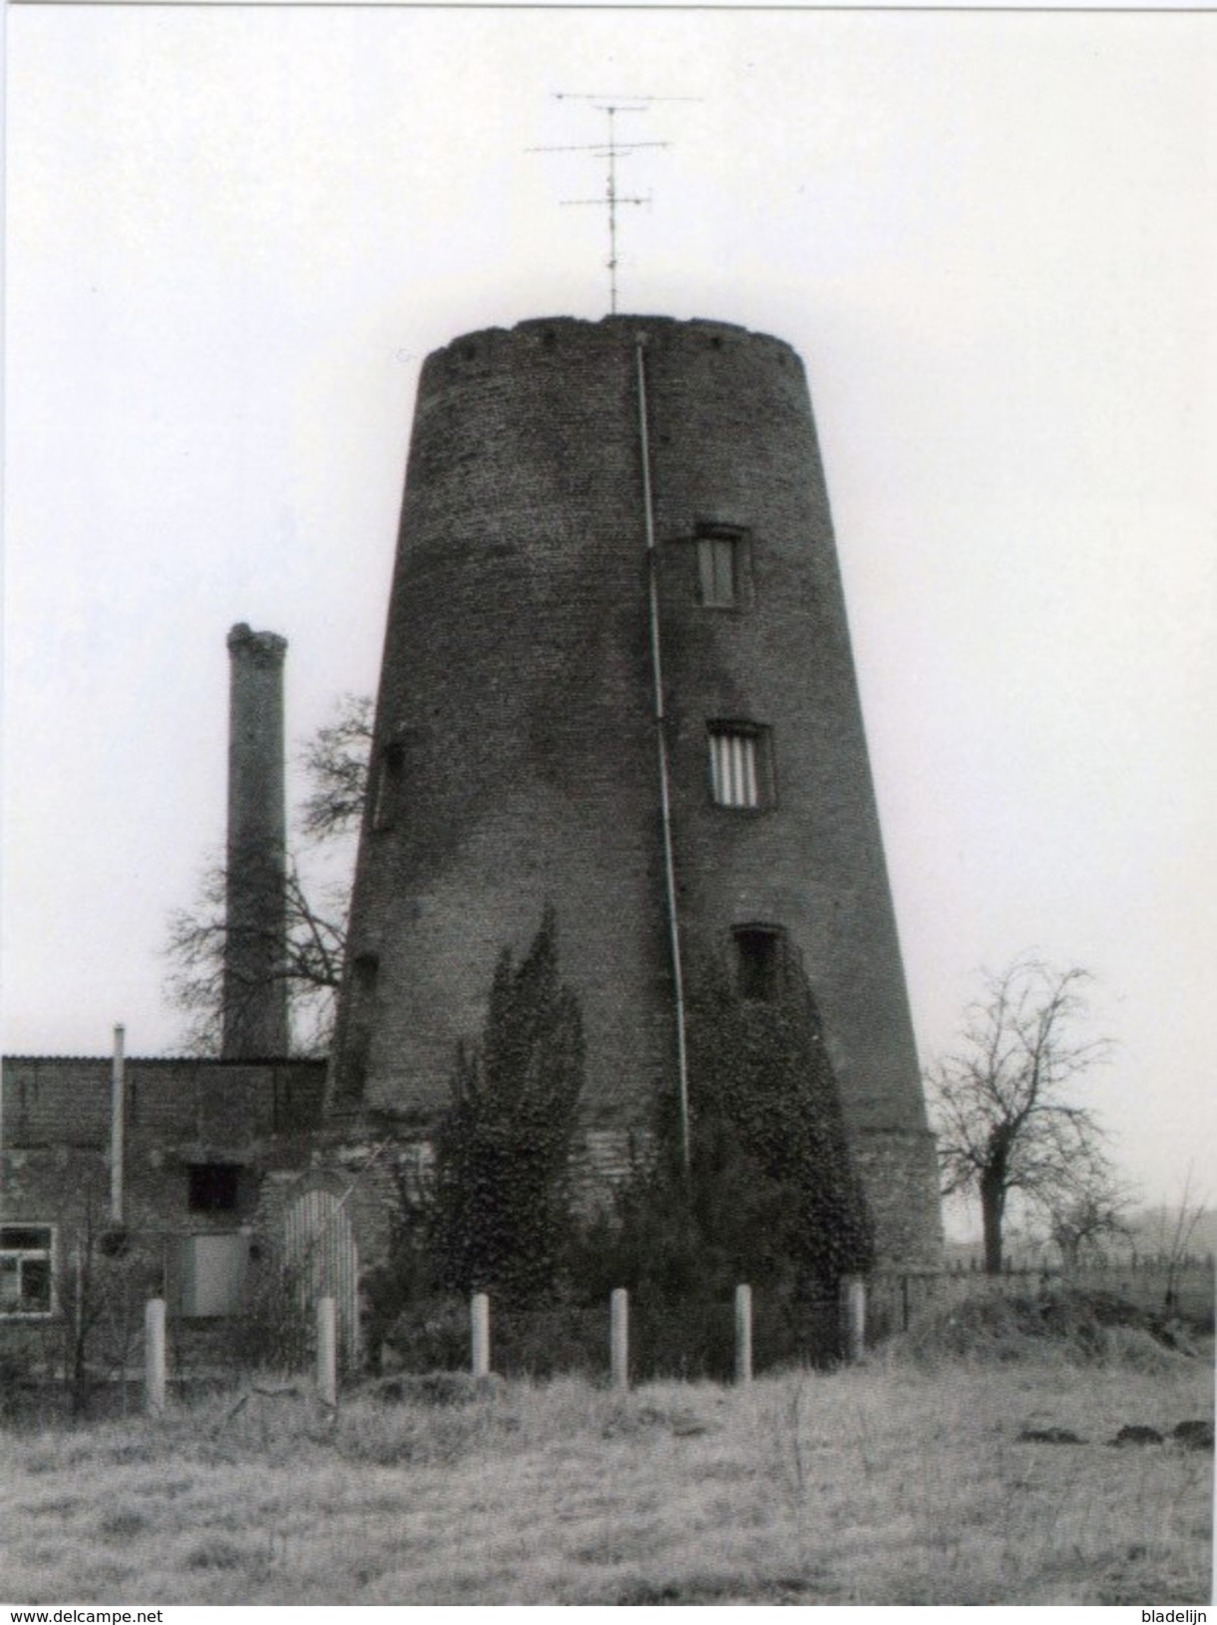 BUGGENHOUT (O.Vl.) - Molen/moulin - Historische Opname Van De Romp Van De Weiveldmolen In 1981; Prentkaart 10x14 Cm - Buggenhout